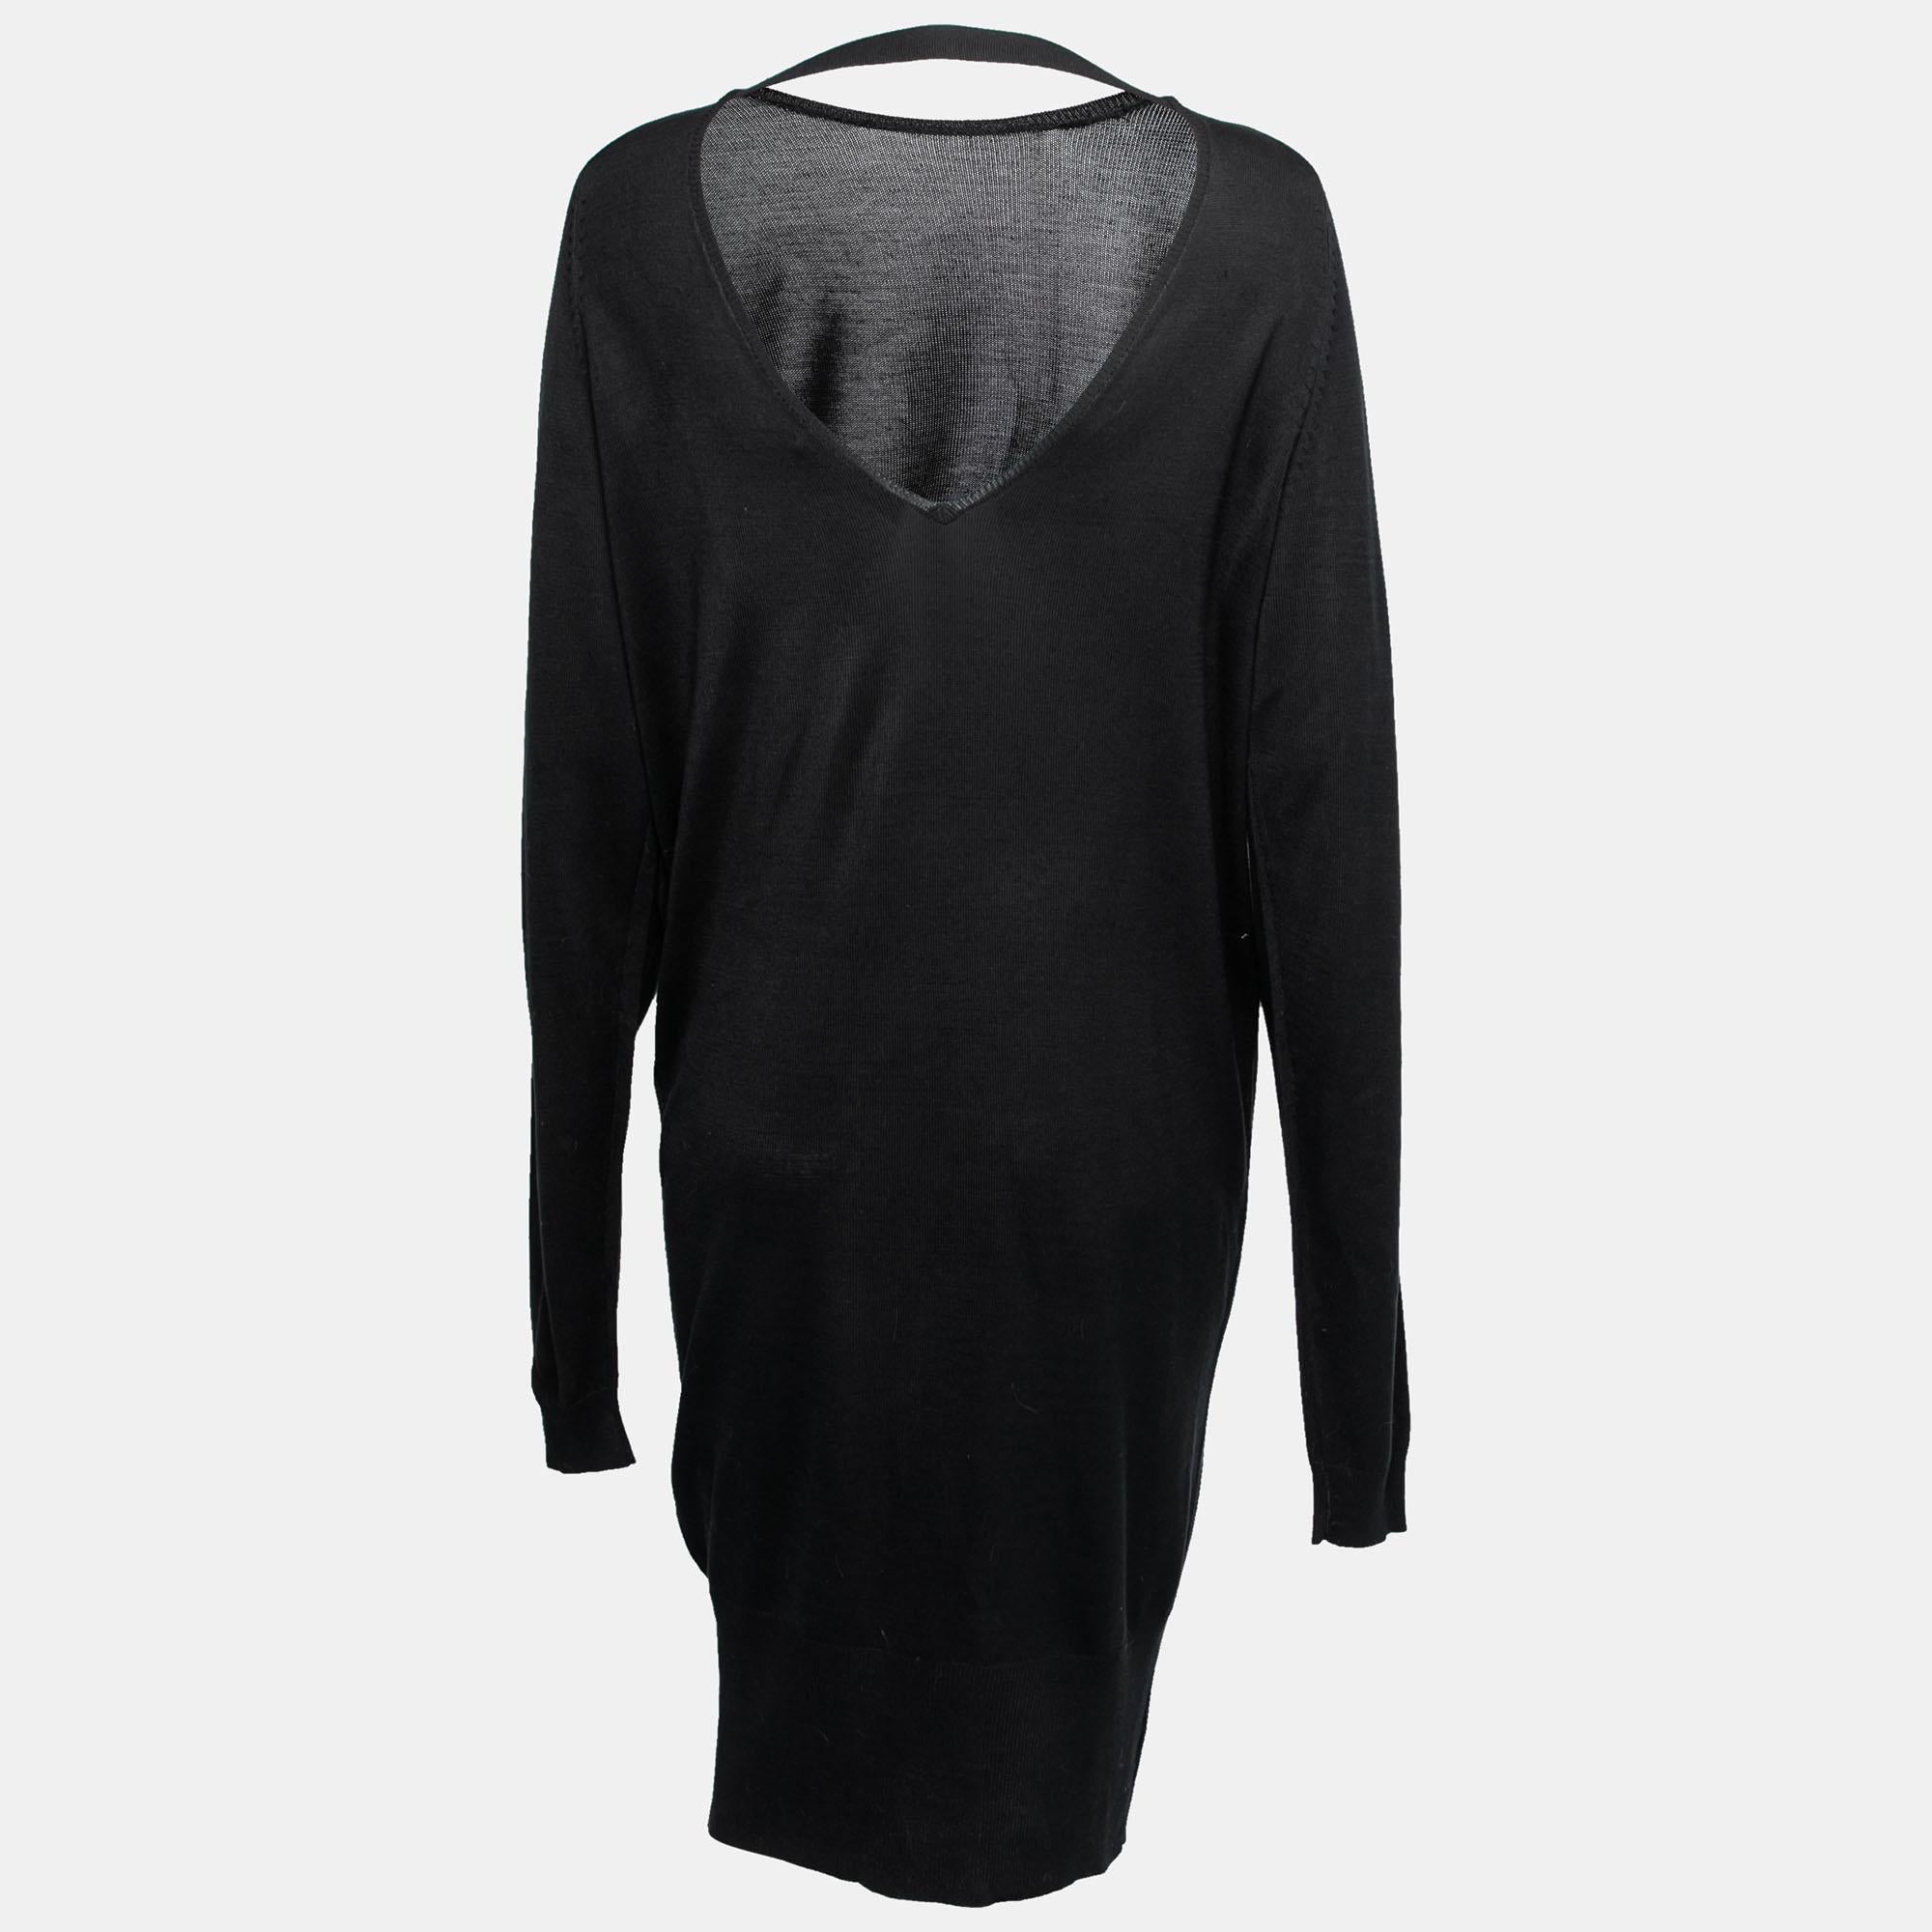 Mit diesem Kleid aus dem Hause Balenciaga fallen Ihnen Komfort und Eleganz leicht! Es ist aus schwarzem Seidenstrick gefertigt und verfügt über einen tiefen Rückenausschnitt, lange Ärmel und Verzierungen an den Schultern. Kombinieren Sie dieses